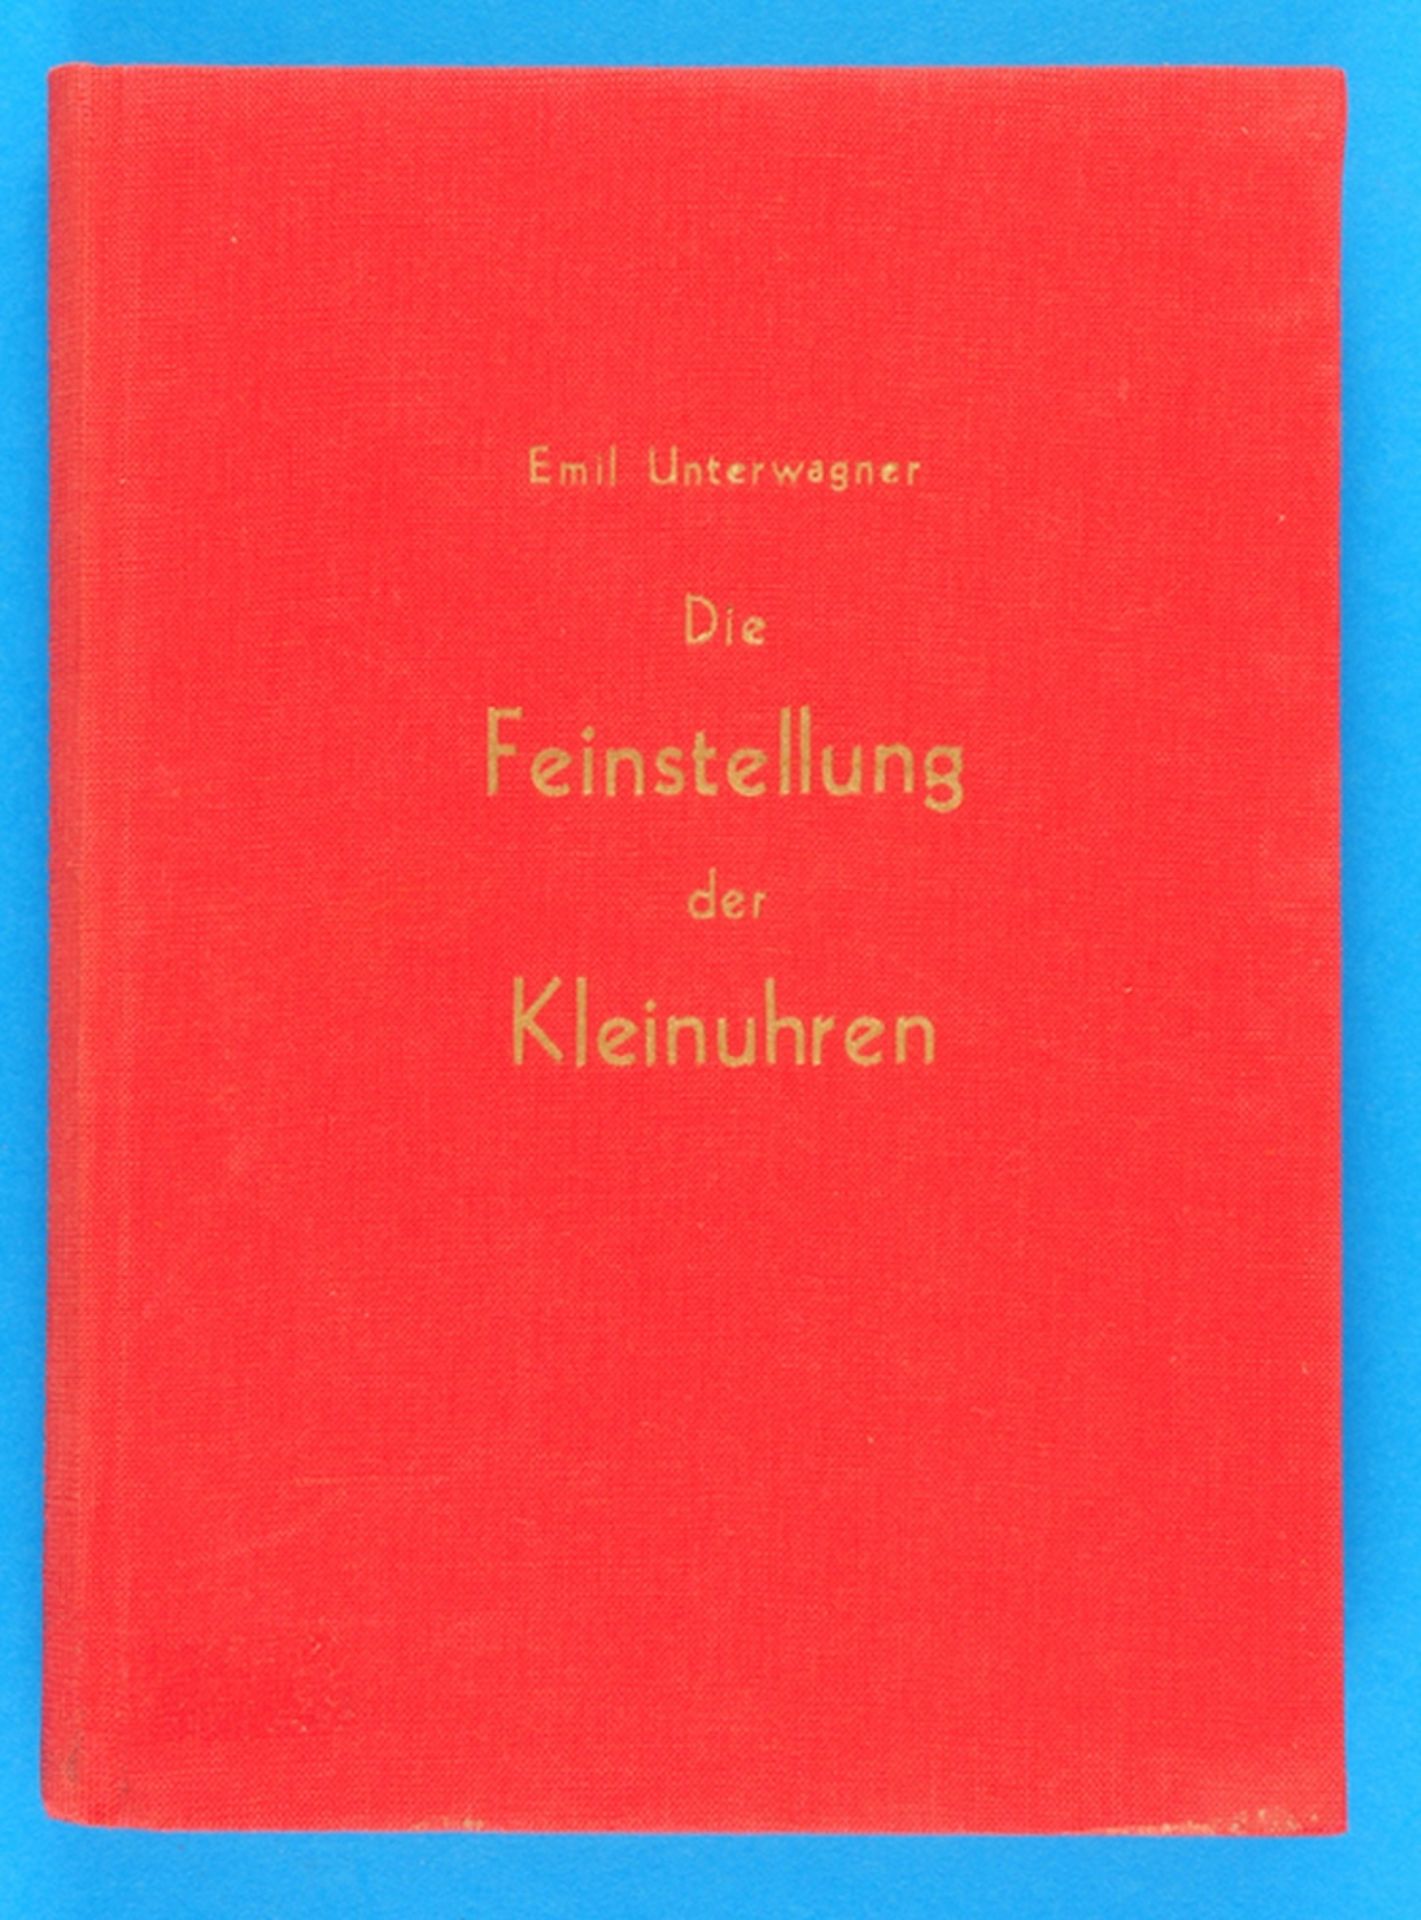 Emil Unterwagner, Die Feinstellung der Kleinuhren, Grundlegendes Handbuch für den fortschrittlichen